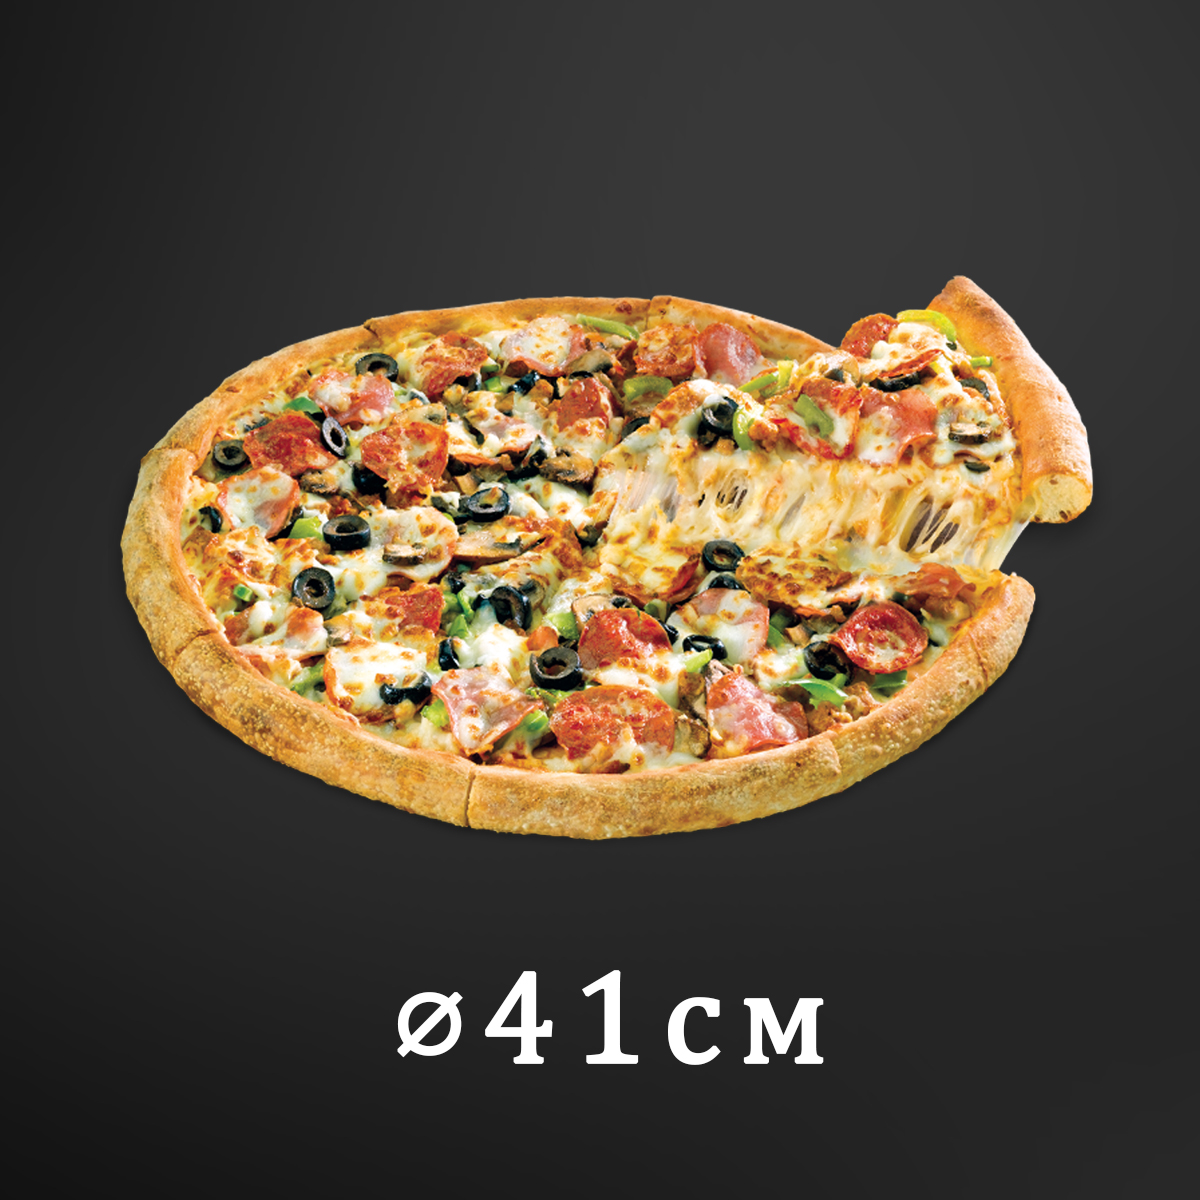 лучшая пицца с доставкой в красноярске рейтинг фото 105